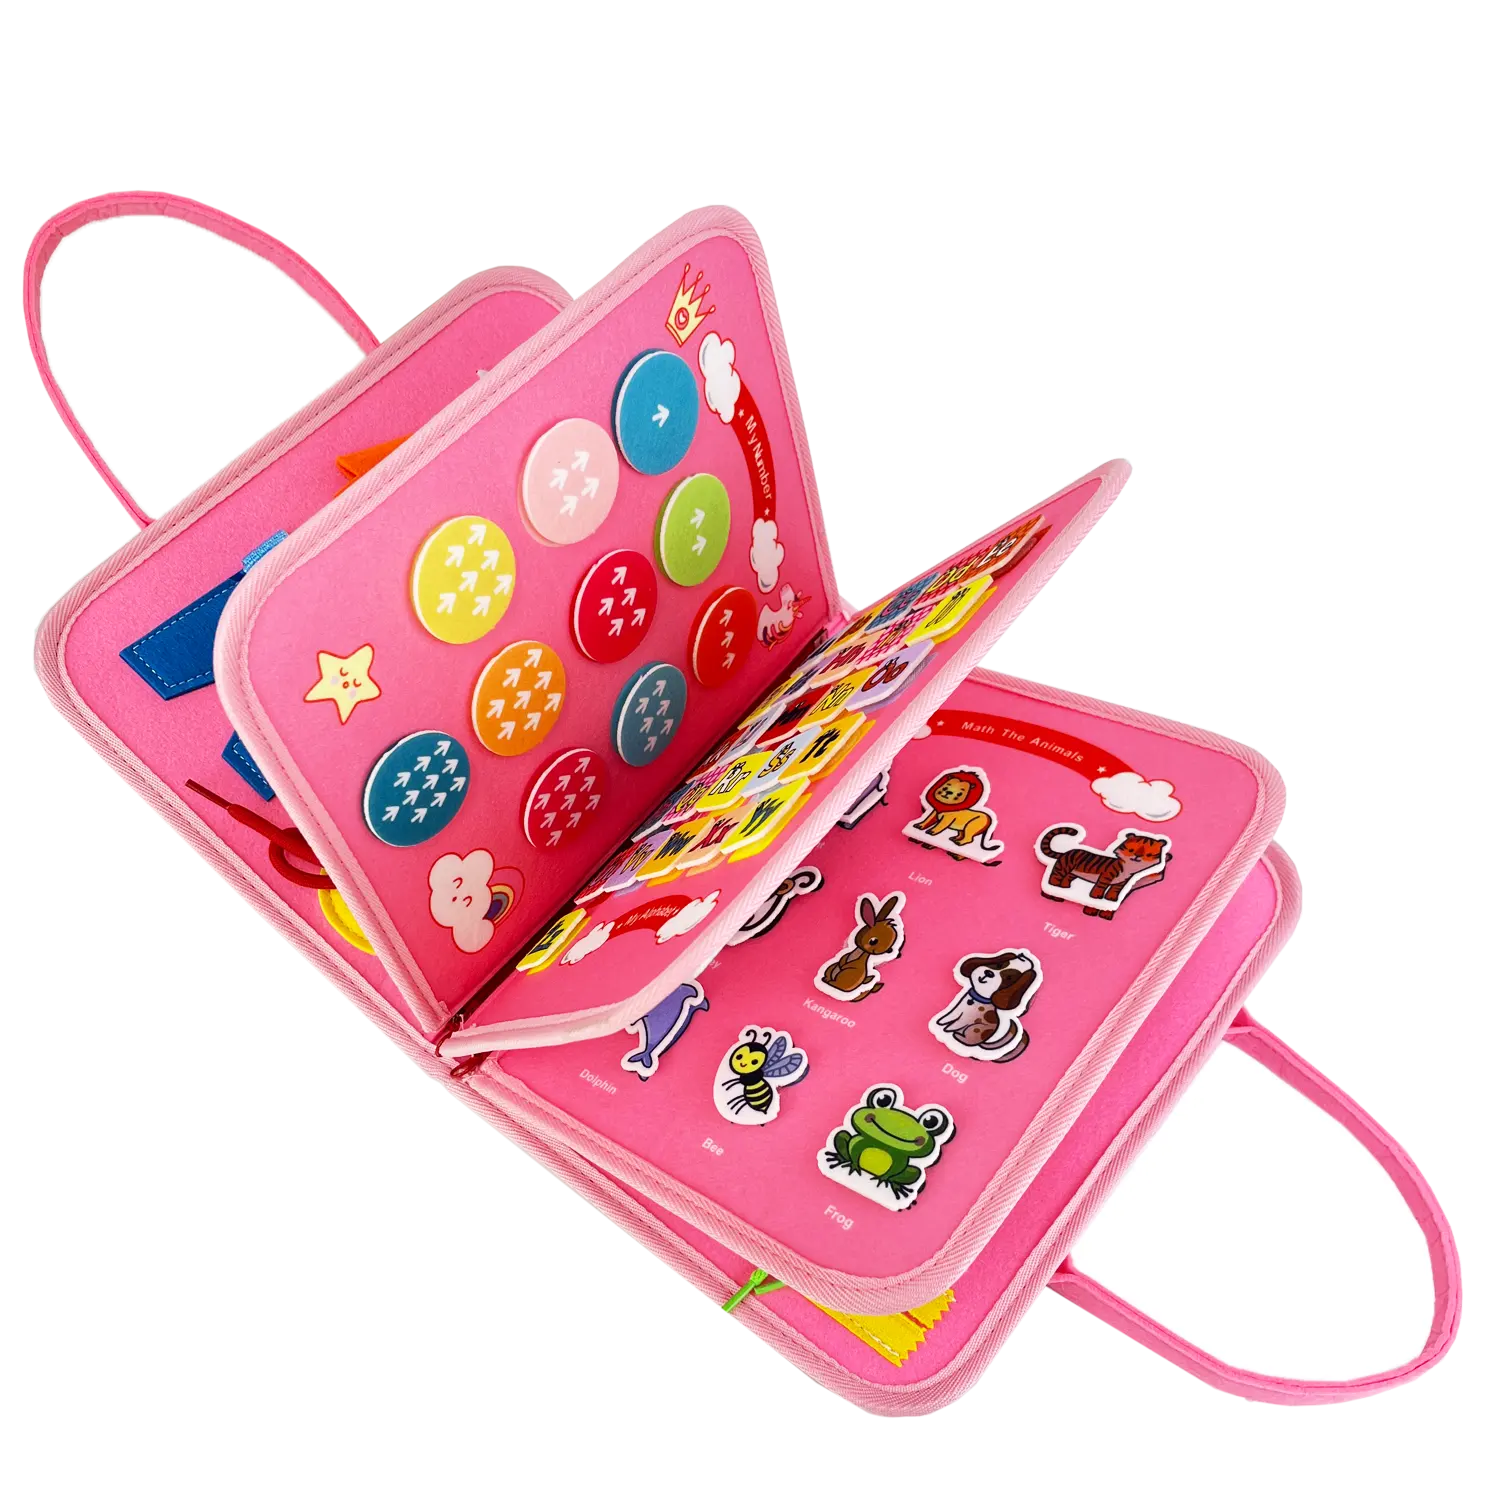 Stock Goods 3D Activity Games Travel Toys Unicórnio rosa Design 21 em 1 Montessori ocupado board com 8 páginas para criança